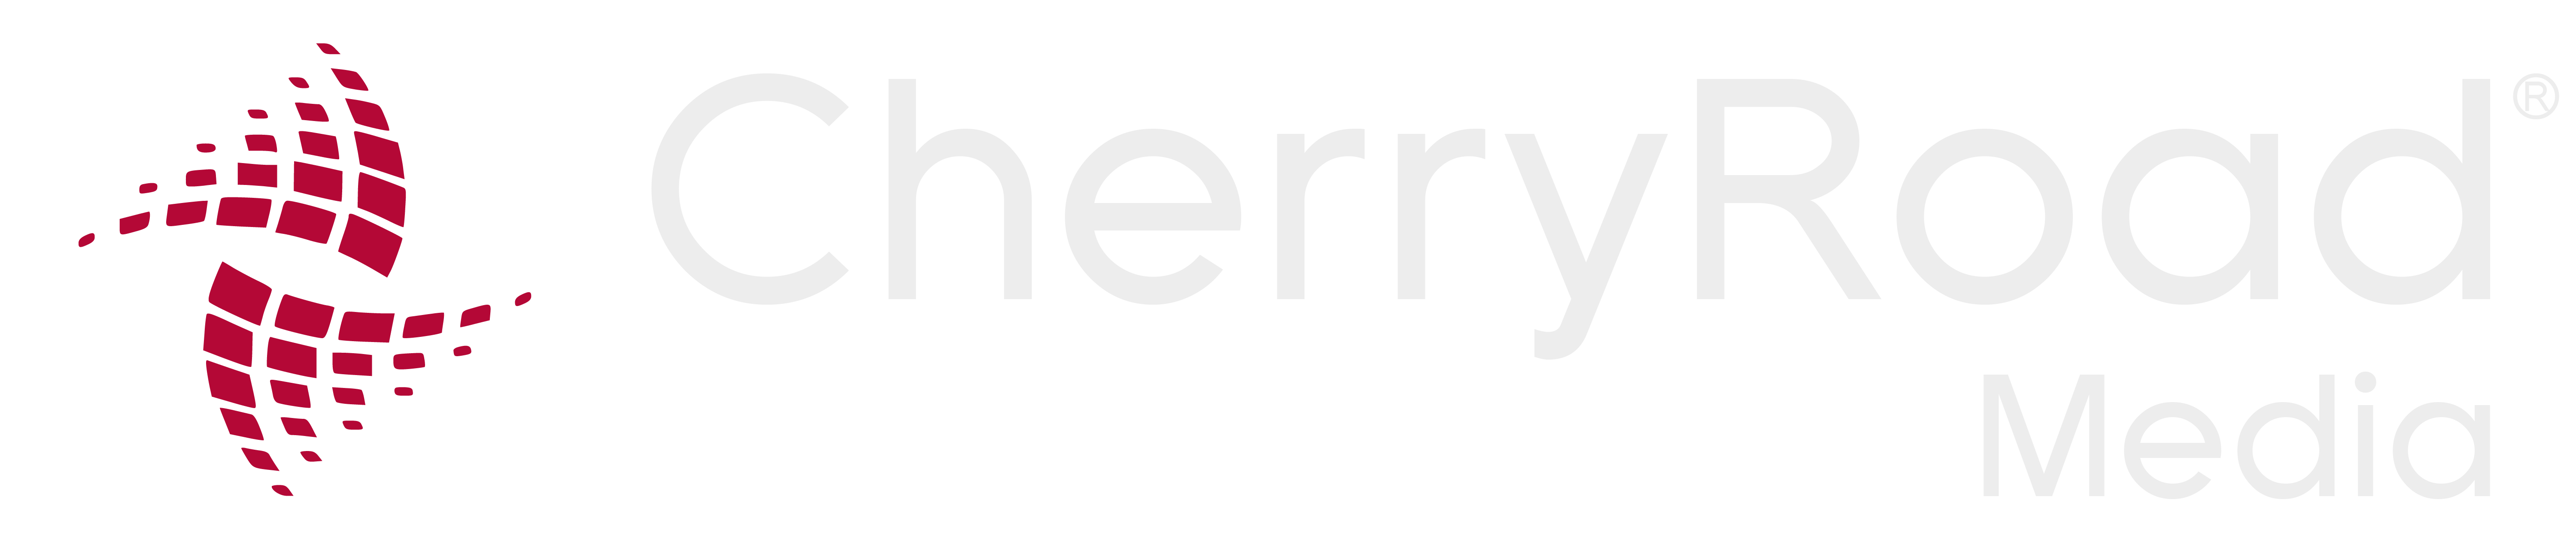 CherryRoad Media